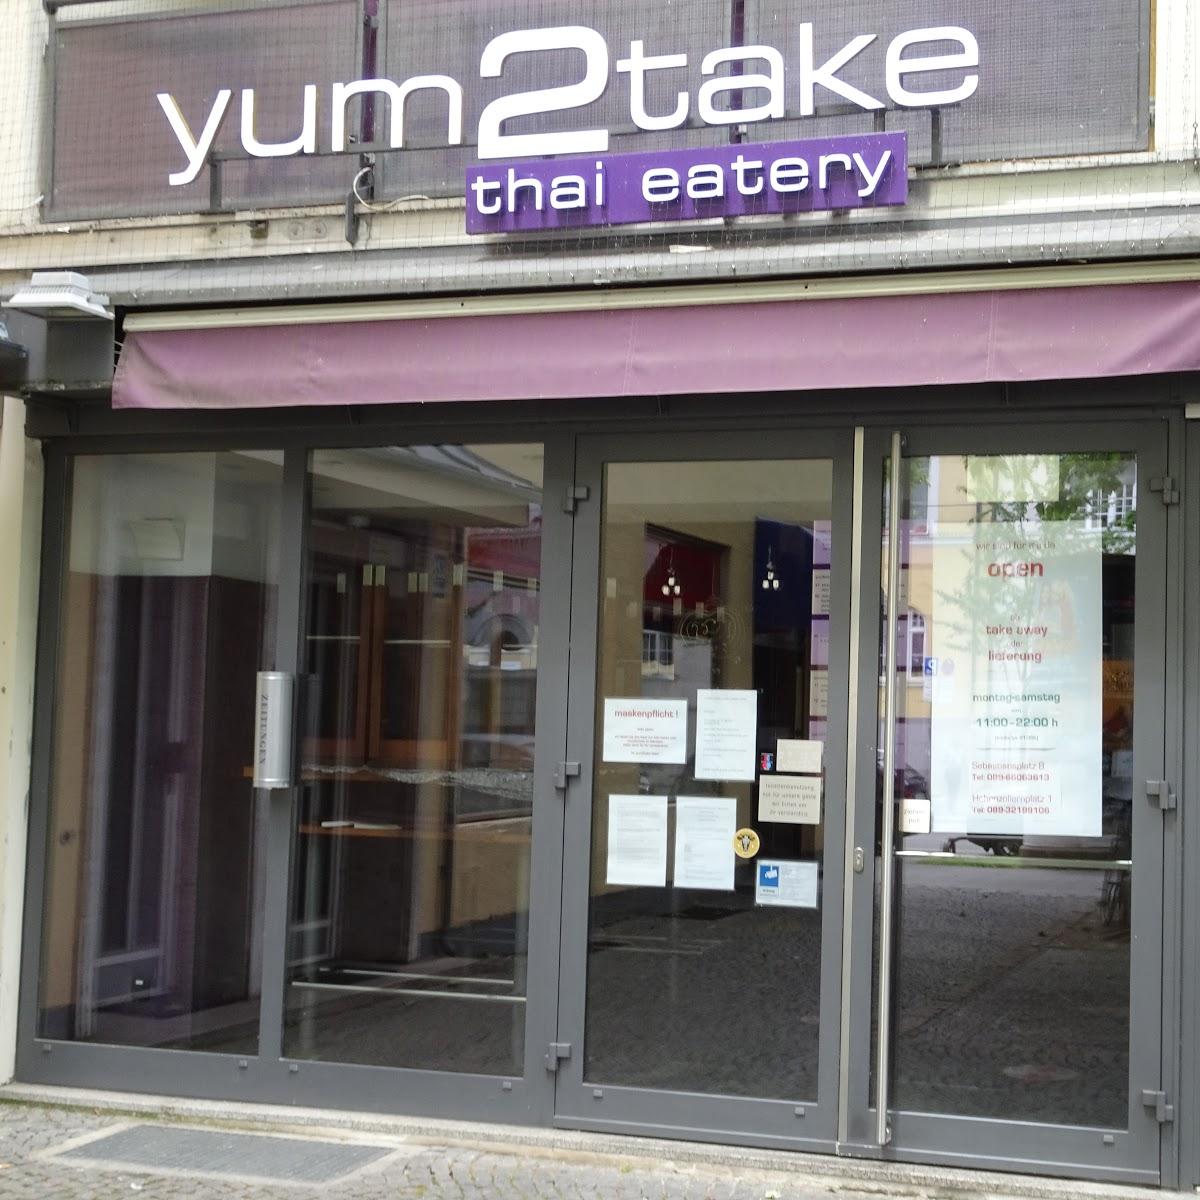 Restaurant "Yum2take" in München